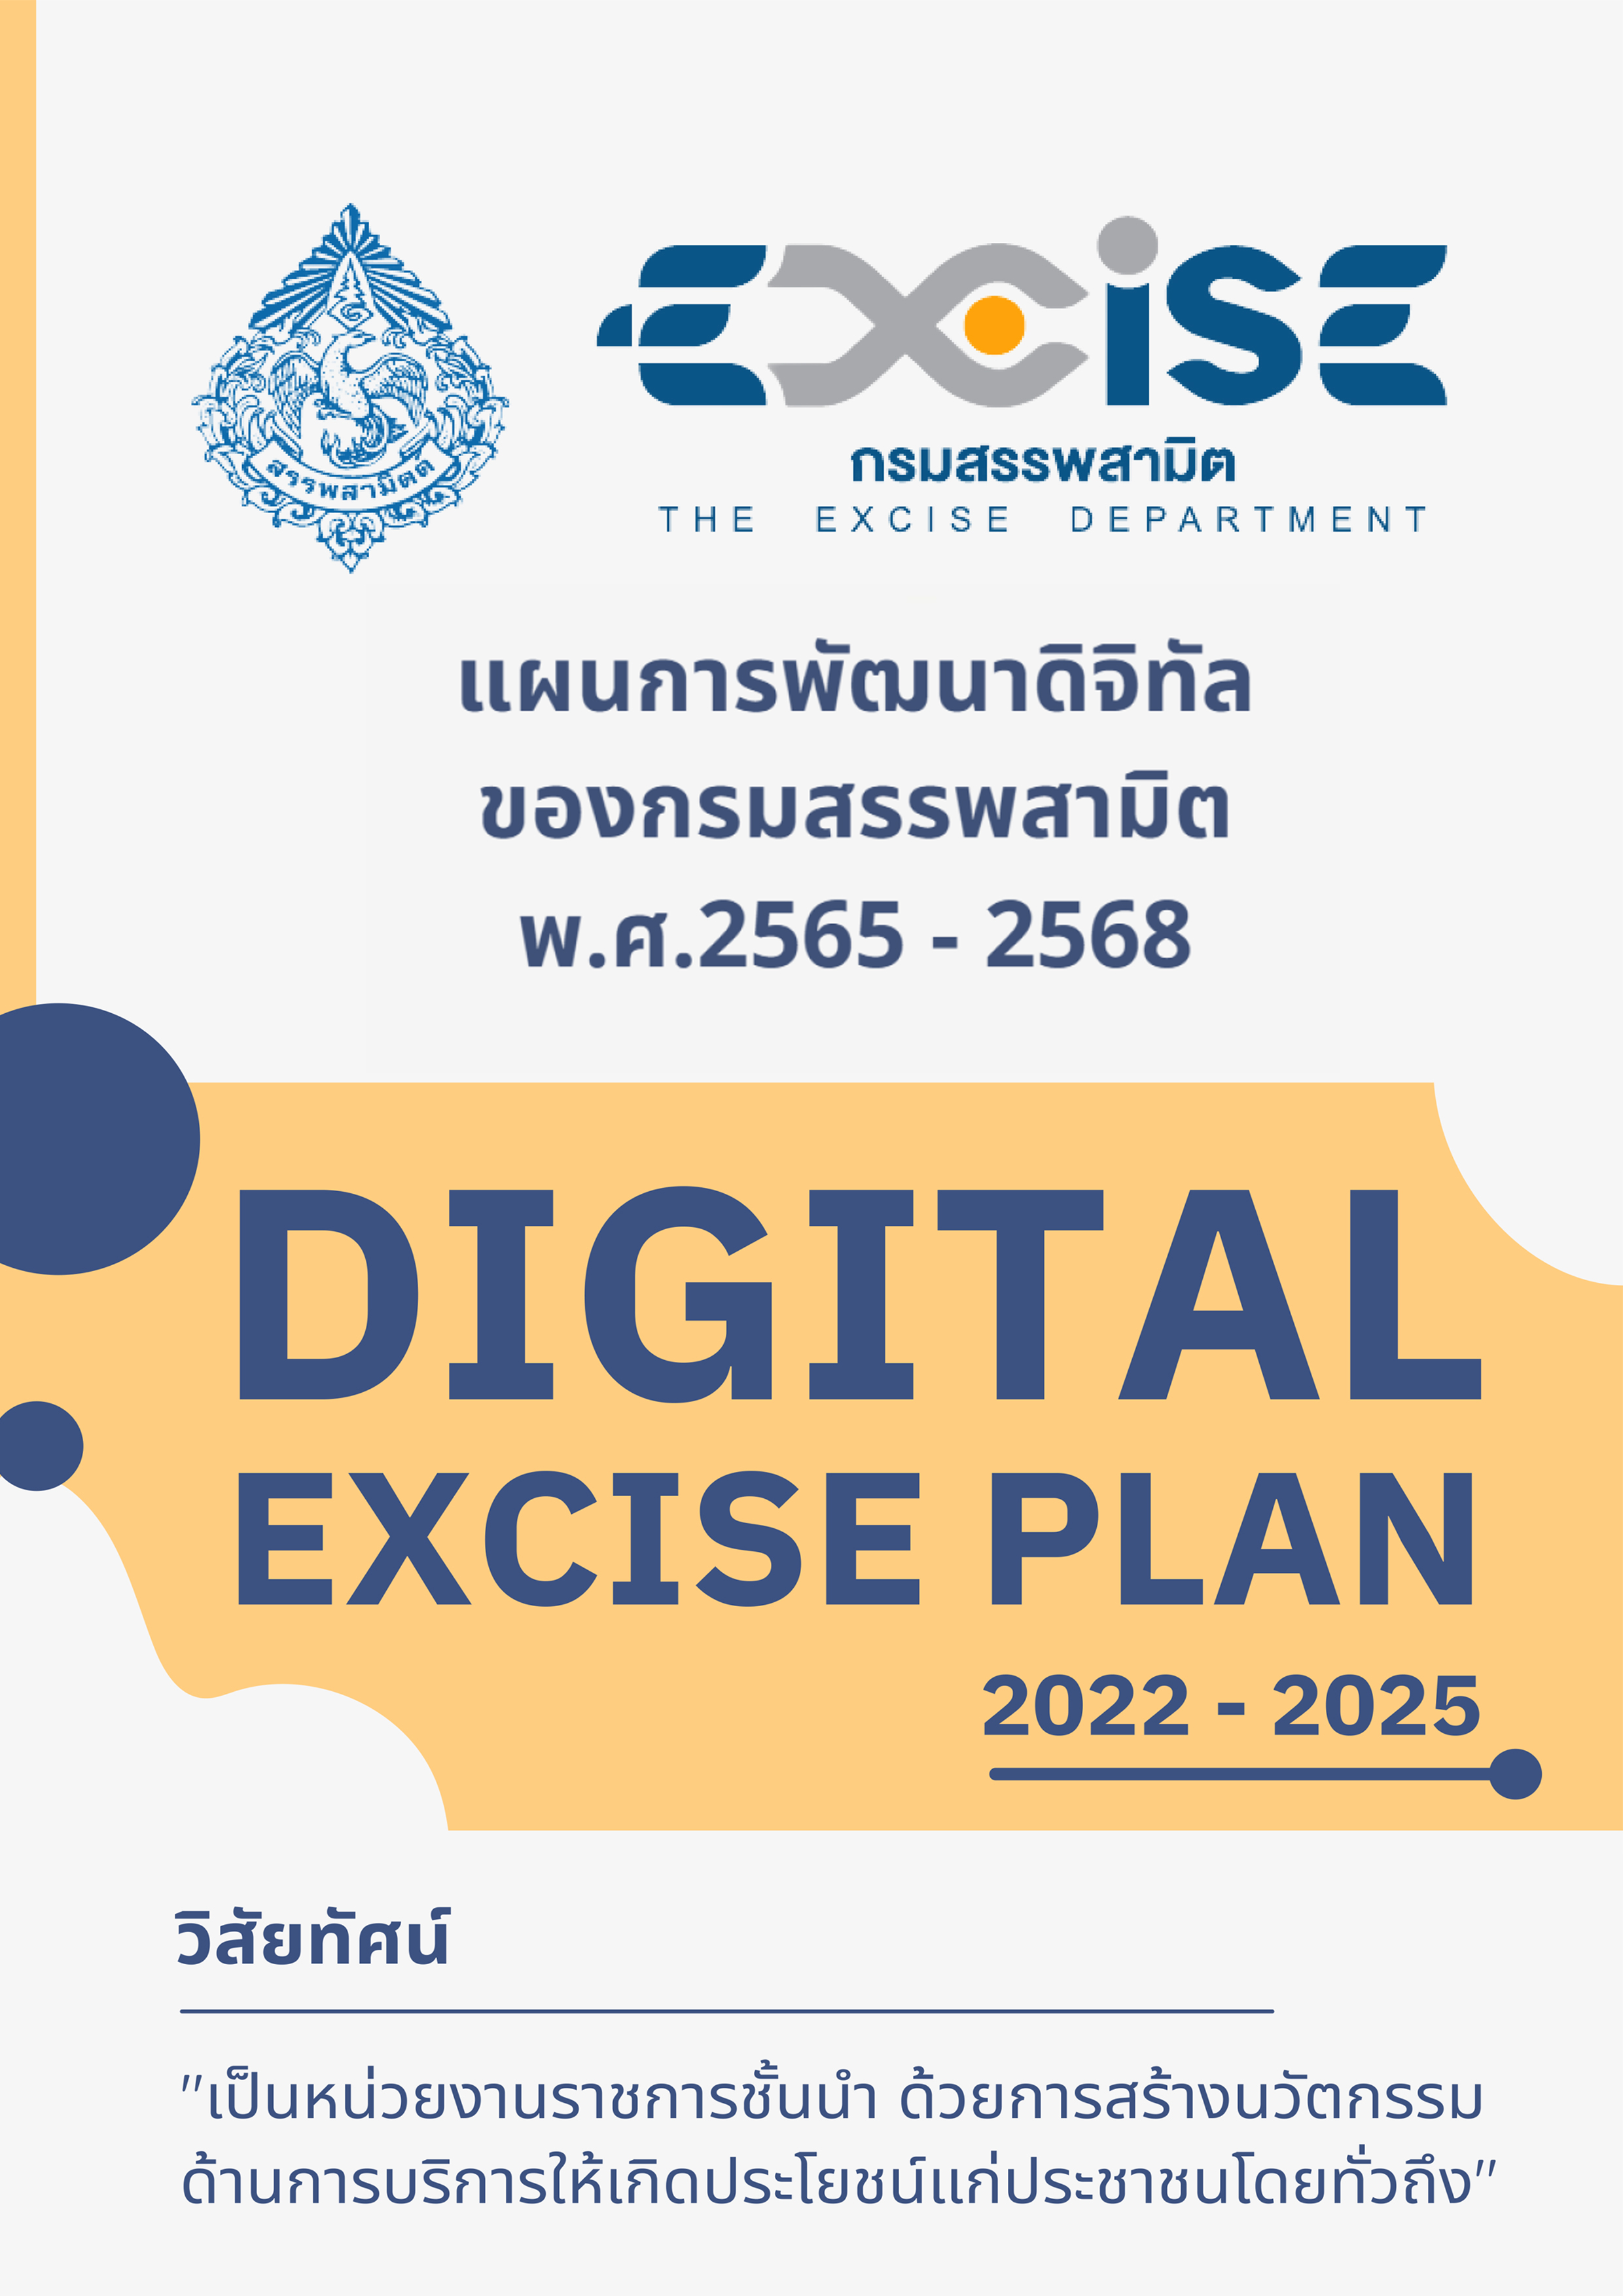 Cover-Brochures-Digital-Excise-Plan.jpg